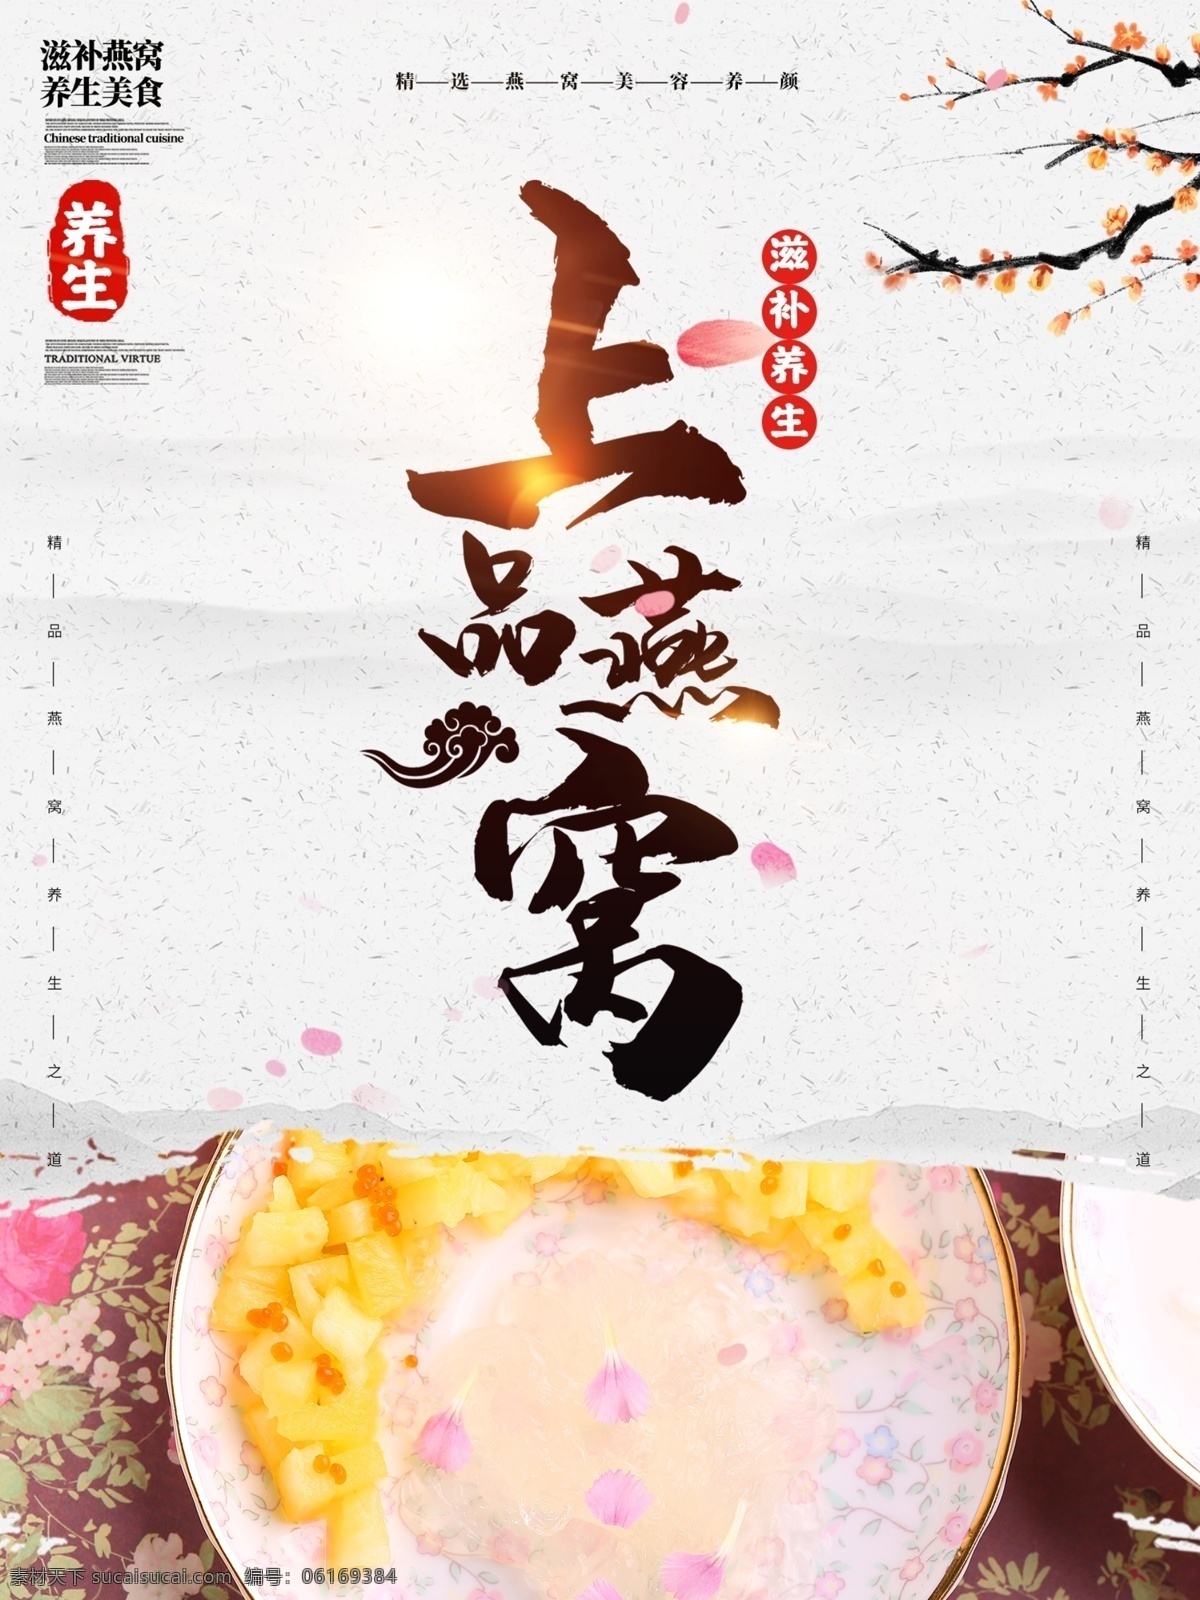 中国 风 燕窝 美食 主题 海报 中国风 上品燕窝 养生